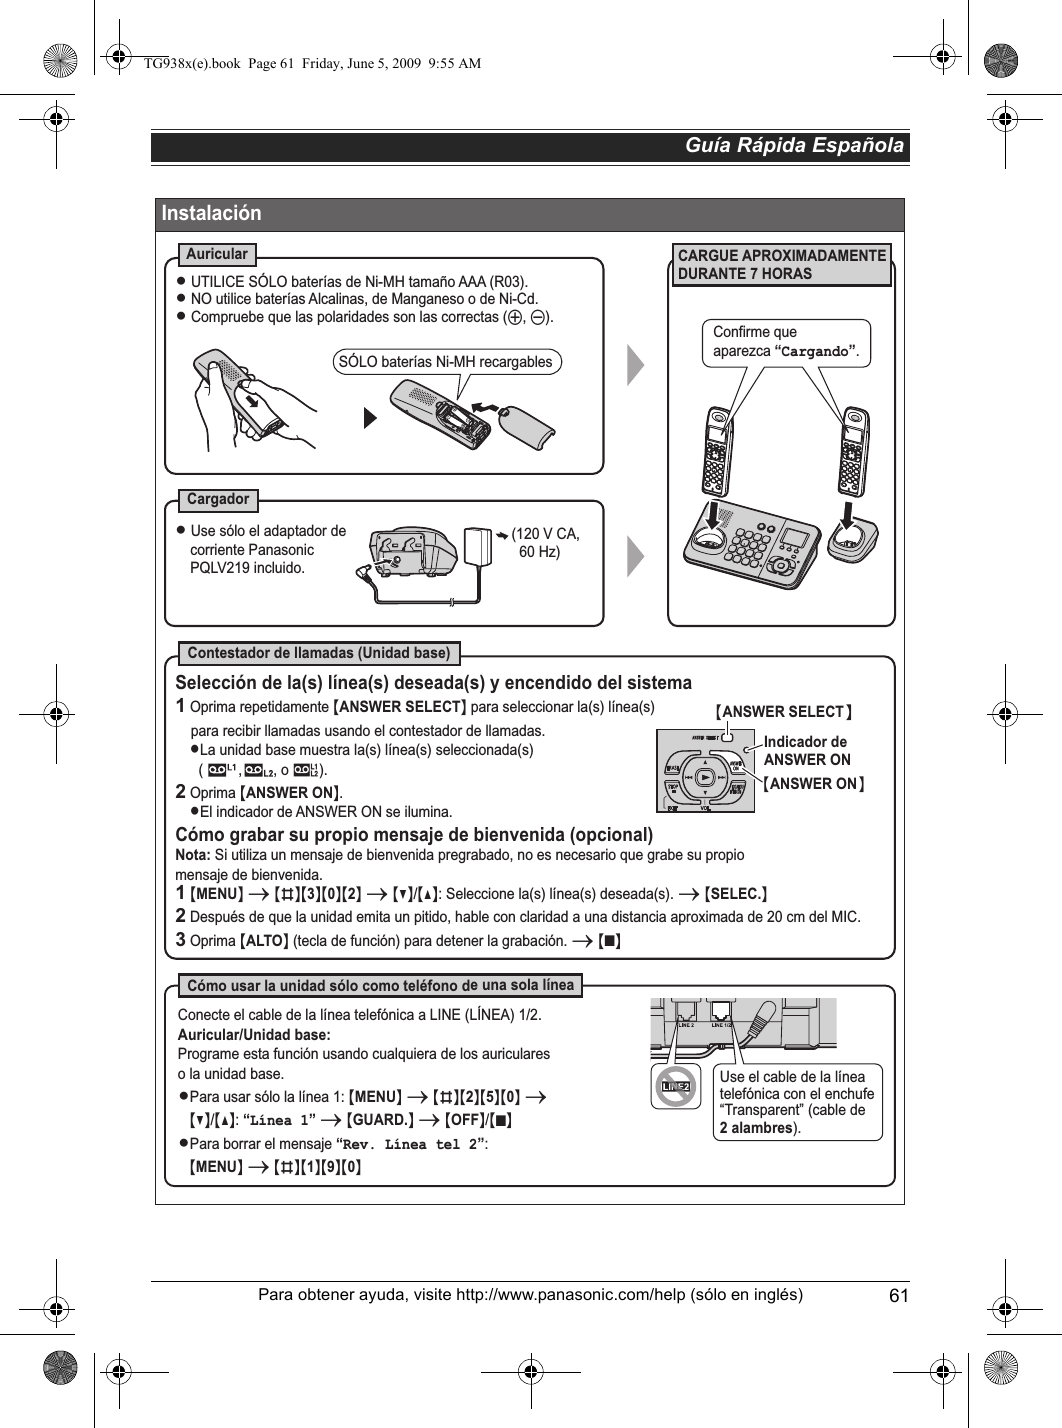 Guía Rápida Española61Para obtener ayuda, visite http://www.panasonic.com/help (sólo en inglés)InstalaciónCARGUE APROXIMADAMENTE DURANTE 7 HORASAuricularCargadorContestador de llamadas (Unidad base)Cómo usar la unidad sólo como teléfono de una sola línea(120 V CA,  60 Hz)L Use sólo el adaptador de corriente Panasonic PQLV219 incluido.SÓLO baterías Ni-MH recargablesL UTILICE SÓLO baterías de Ni-MH tamaño AAA (R03).L NO utilice baterías Alcalinas, de Manganeso o de Ni-Cd.L Compruebe que las polaridades son las correctas (S, T).Selección de la(s) línea(s) deseada(s) y encendido del sistema1 Oprima repetidamente {ANSWER SELECT} para seleccionar la(s) línea(s)    para recibir llamadas usando el contestador de llamadas. LLa unidad base muestra la(s) línea(s) seleccionada(s)       (         ,        , o 8).2 Oprima {ANSWER ON}.LEl indicador de ANSWER ON se ilumina.Cómo grabar su propio mensaje de bienvenida (opcional)Nota: Si utiliza un mensaje de bienvenida pregrabado, no es necesario que grabe su propio mensaje de bienvenida.Conecte el cable de la línea telefónica a LINE (LÍNEA) 1/2.Auricular/Unidad base:Programe esta función usando cualquiera de los auriculareso la unidad base.LPara usar sólo la línea 1: {MENU} i {#}{2}{5}{0} i   {V}/{^}: “Línea 1” i {GUARD.} i {OFF}/{}LPara borrar el mensaje “Rev. Línea tel 2”:     {MENU} i {#}{1}{9}{0}1 {MENU} i {#}{3}{0}{2} i {V}/{^}: Seleccione la(s) línea(s) deseada(s). i {SELEC.}  2 Después de que la unidad emita un pitido, hable con claridad a una distancia aproximada de 20 cm del MIC.3 Oprima {ALTO} (tecla de función) para detener la grabación. i {}{ANSWER SELECT}Indicador de ANSWER ON{ANSWER ON}INEUse el cable de la línea telefónica con el enchufe “Transparent” (cable de 2 alambres).Confirme que aparezca “Cargando”.■■TG938x(e).book  Page 61  Friday, June 5, 2009  9:55 AM